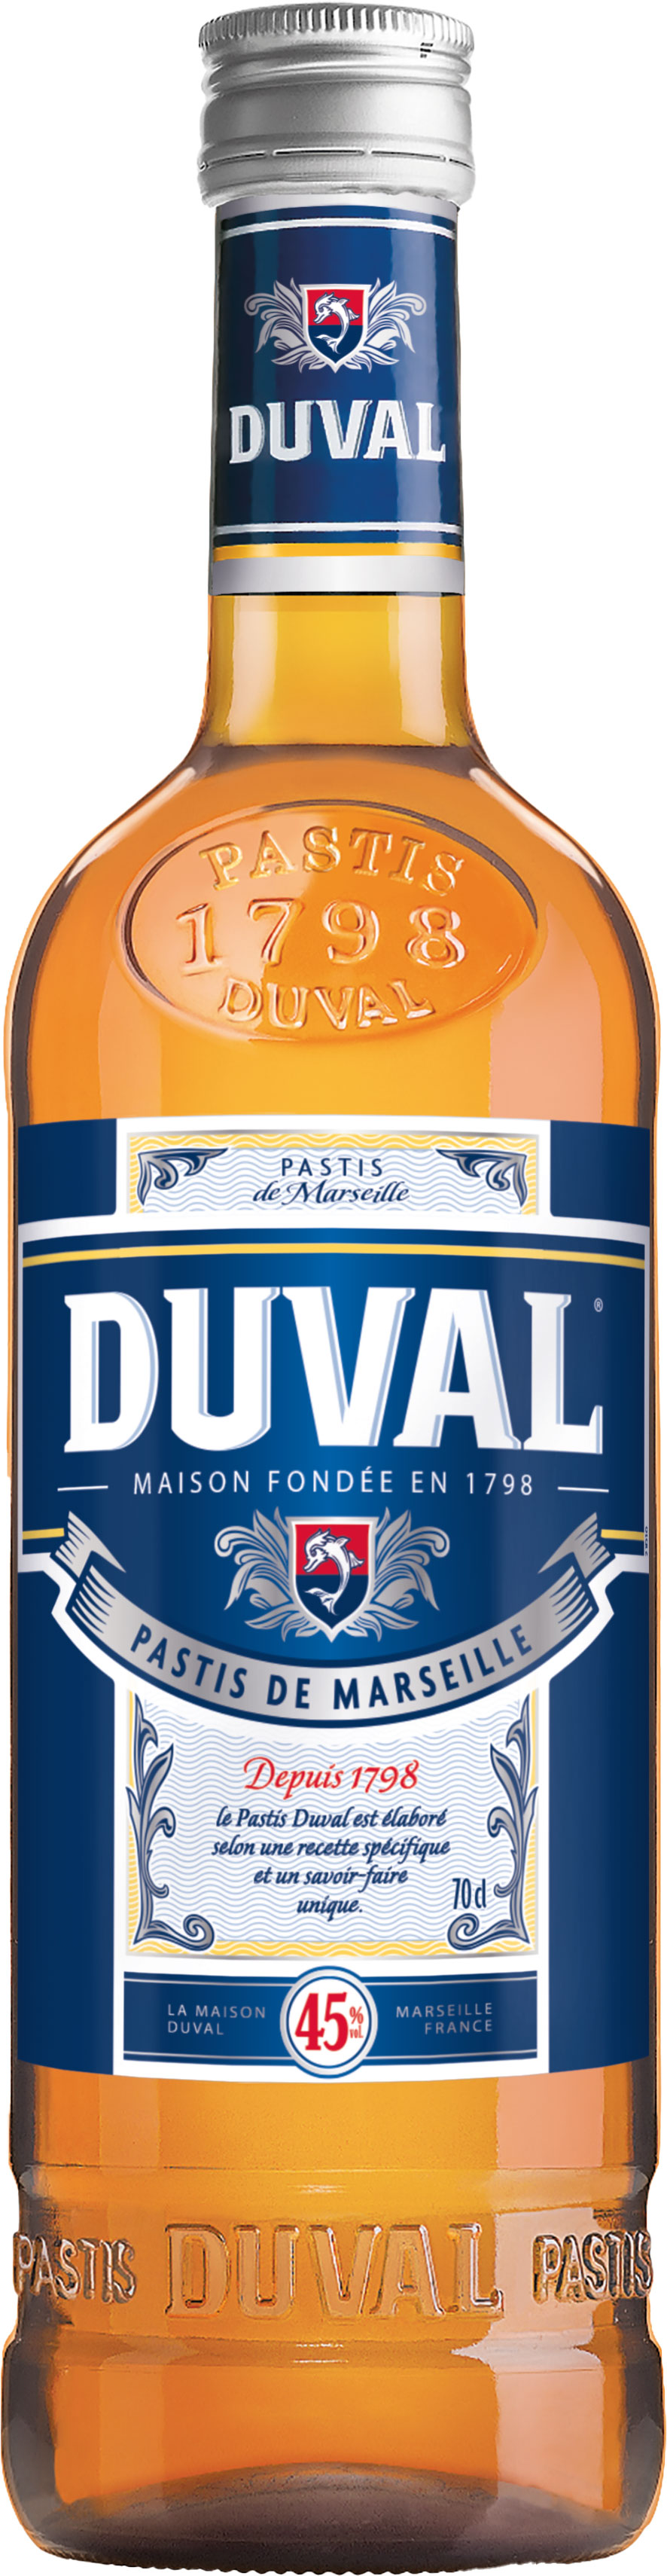 l de Duval Pastis 45% vol. 0,7 | Marseille Schneekloth